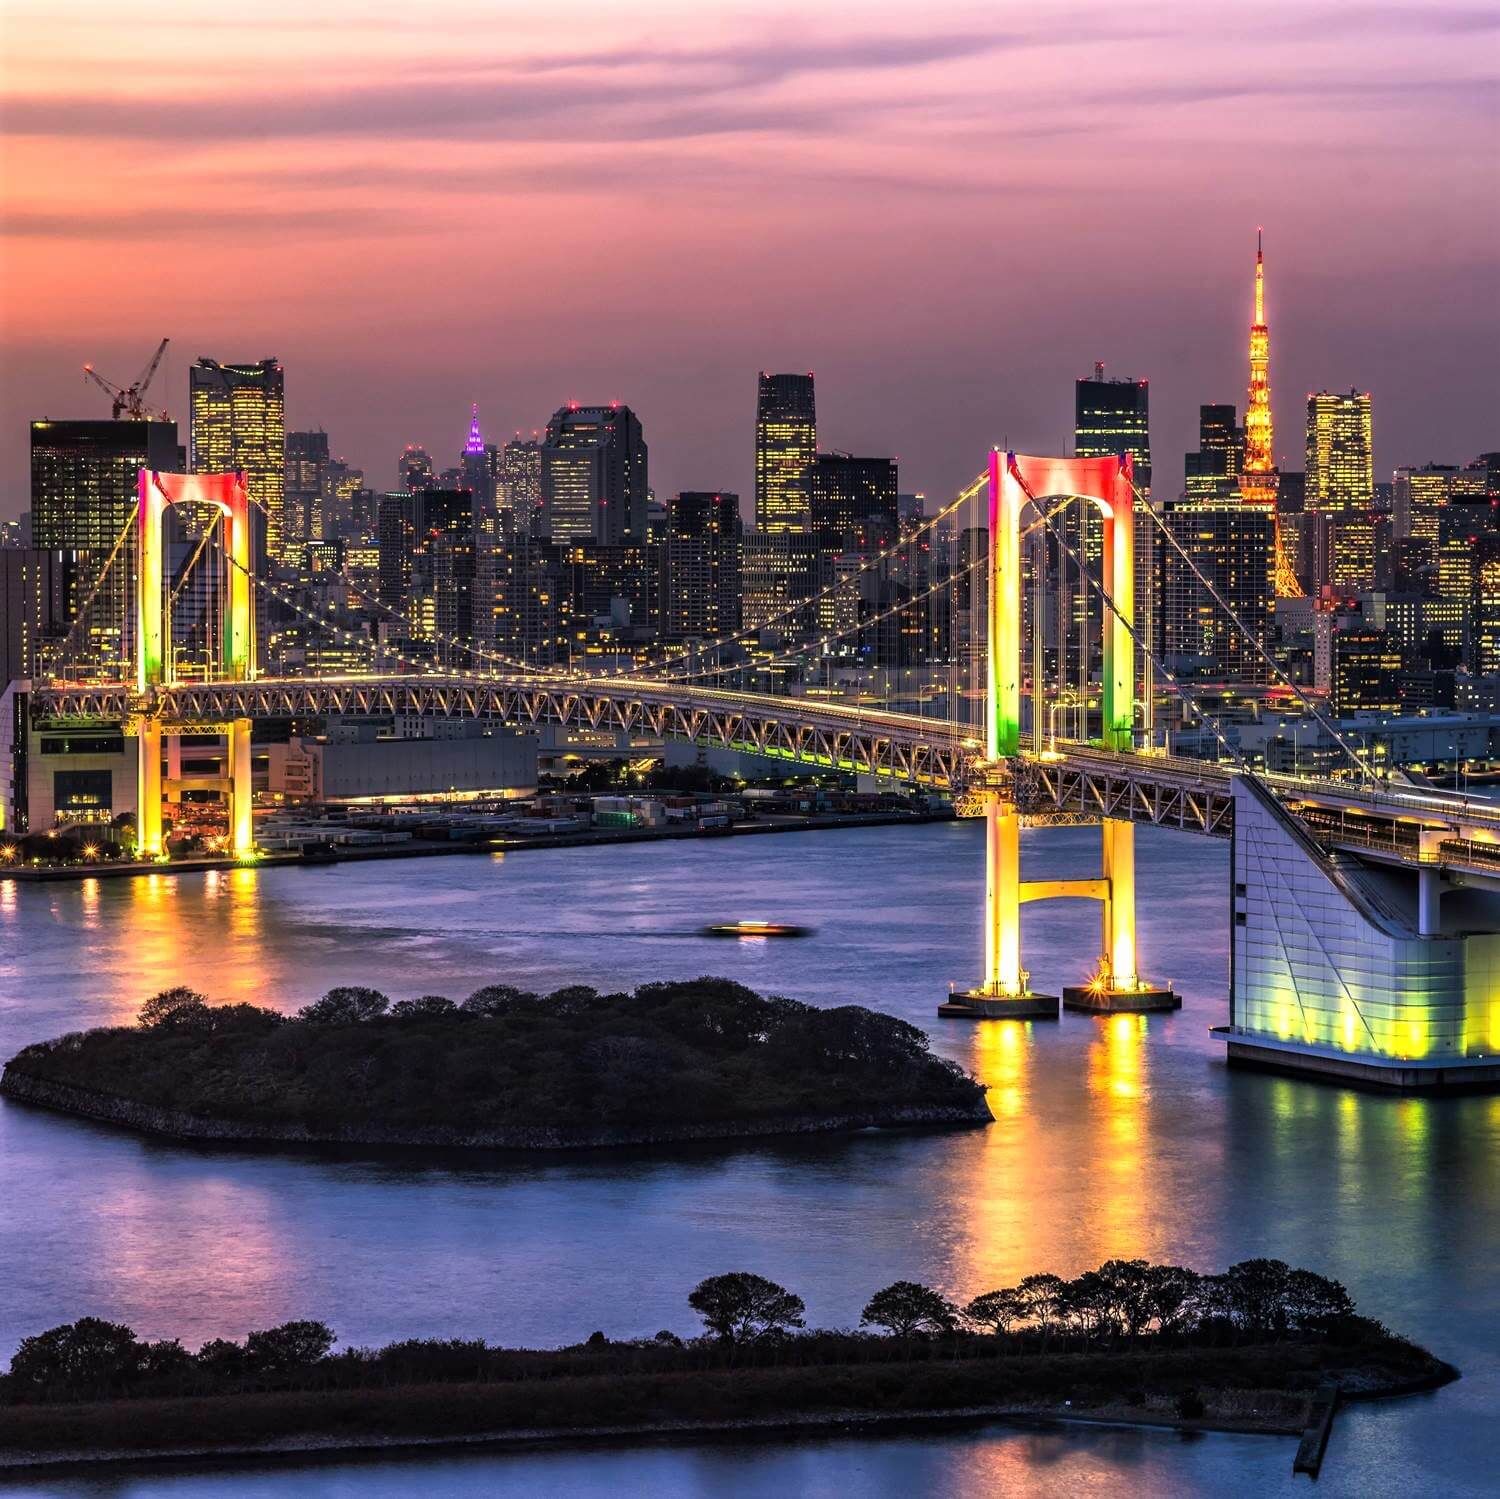 Lighting design in Japan: Rainbow Bridge = Shutterstock